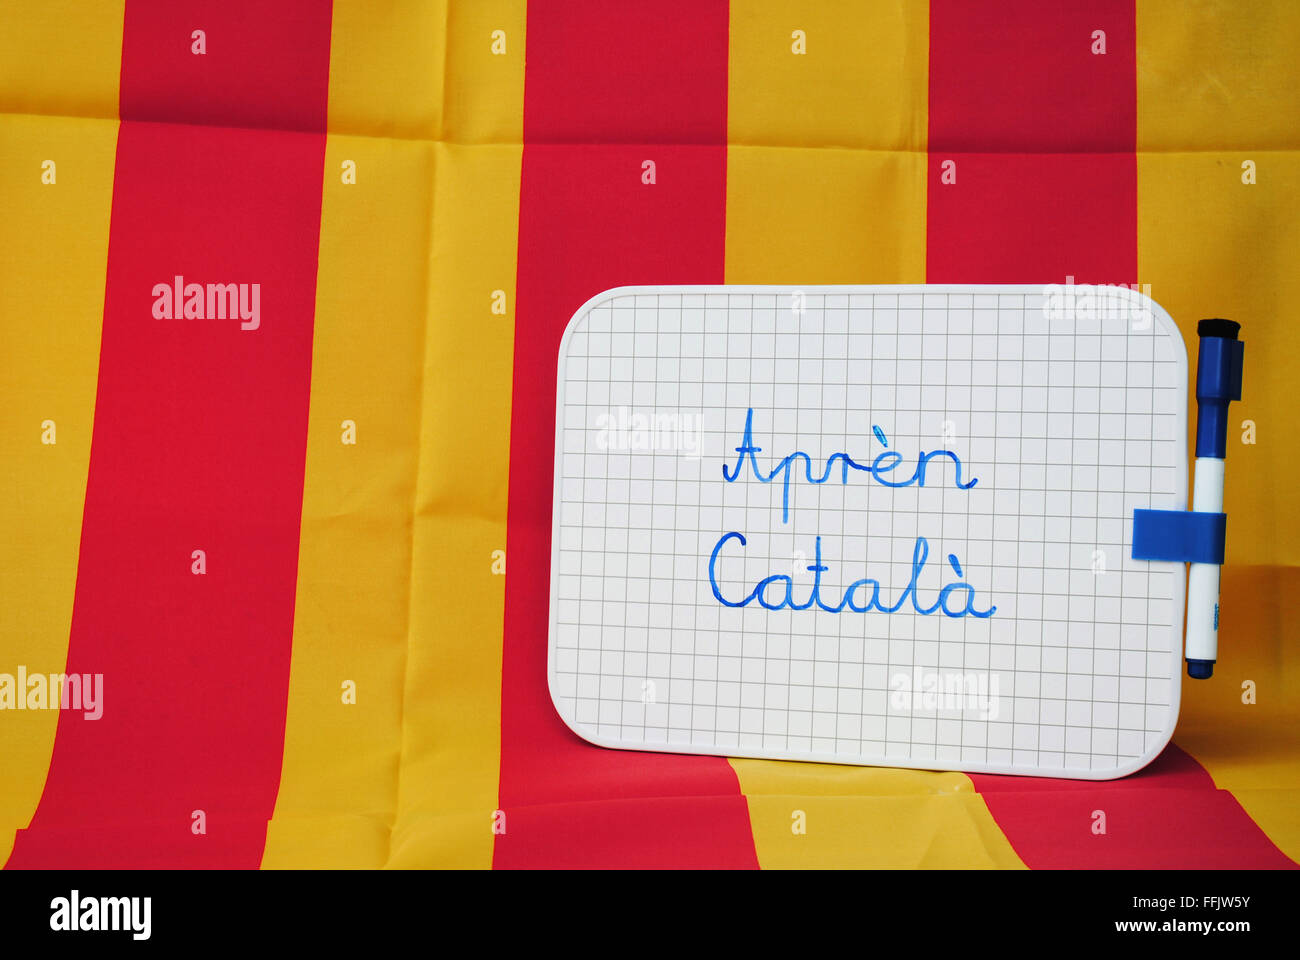 "Katalanisch auf Katalanisch lernen" geschrieben auf einem kleinen Whiteboard gegen eine gelb und rot - Hintergrund katalanische Flagge. Stockfoto